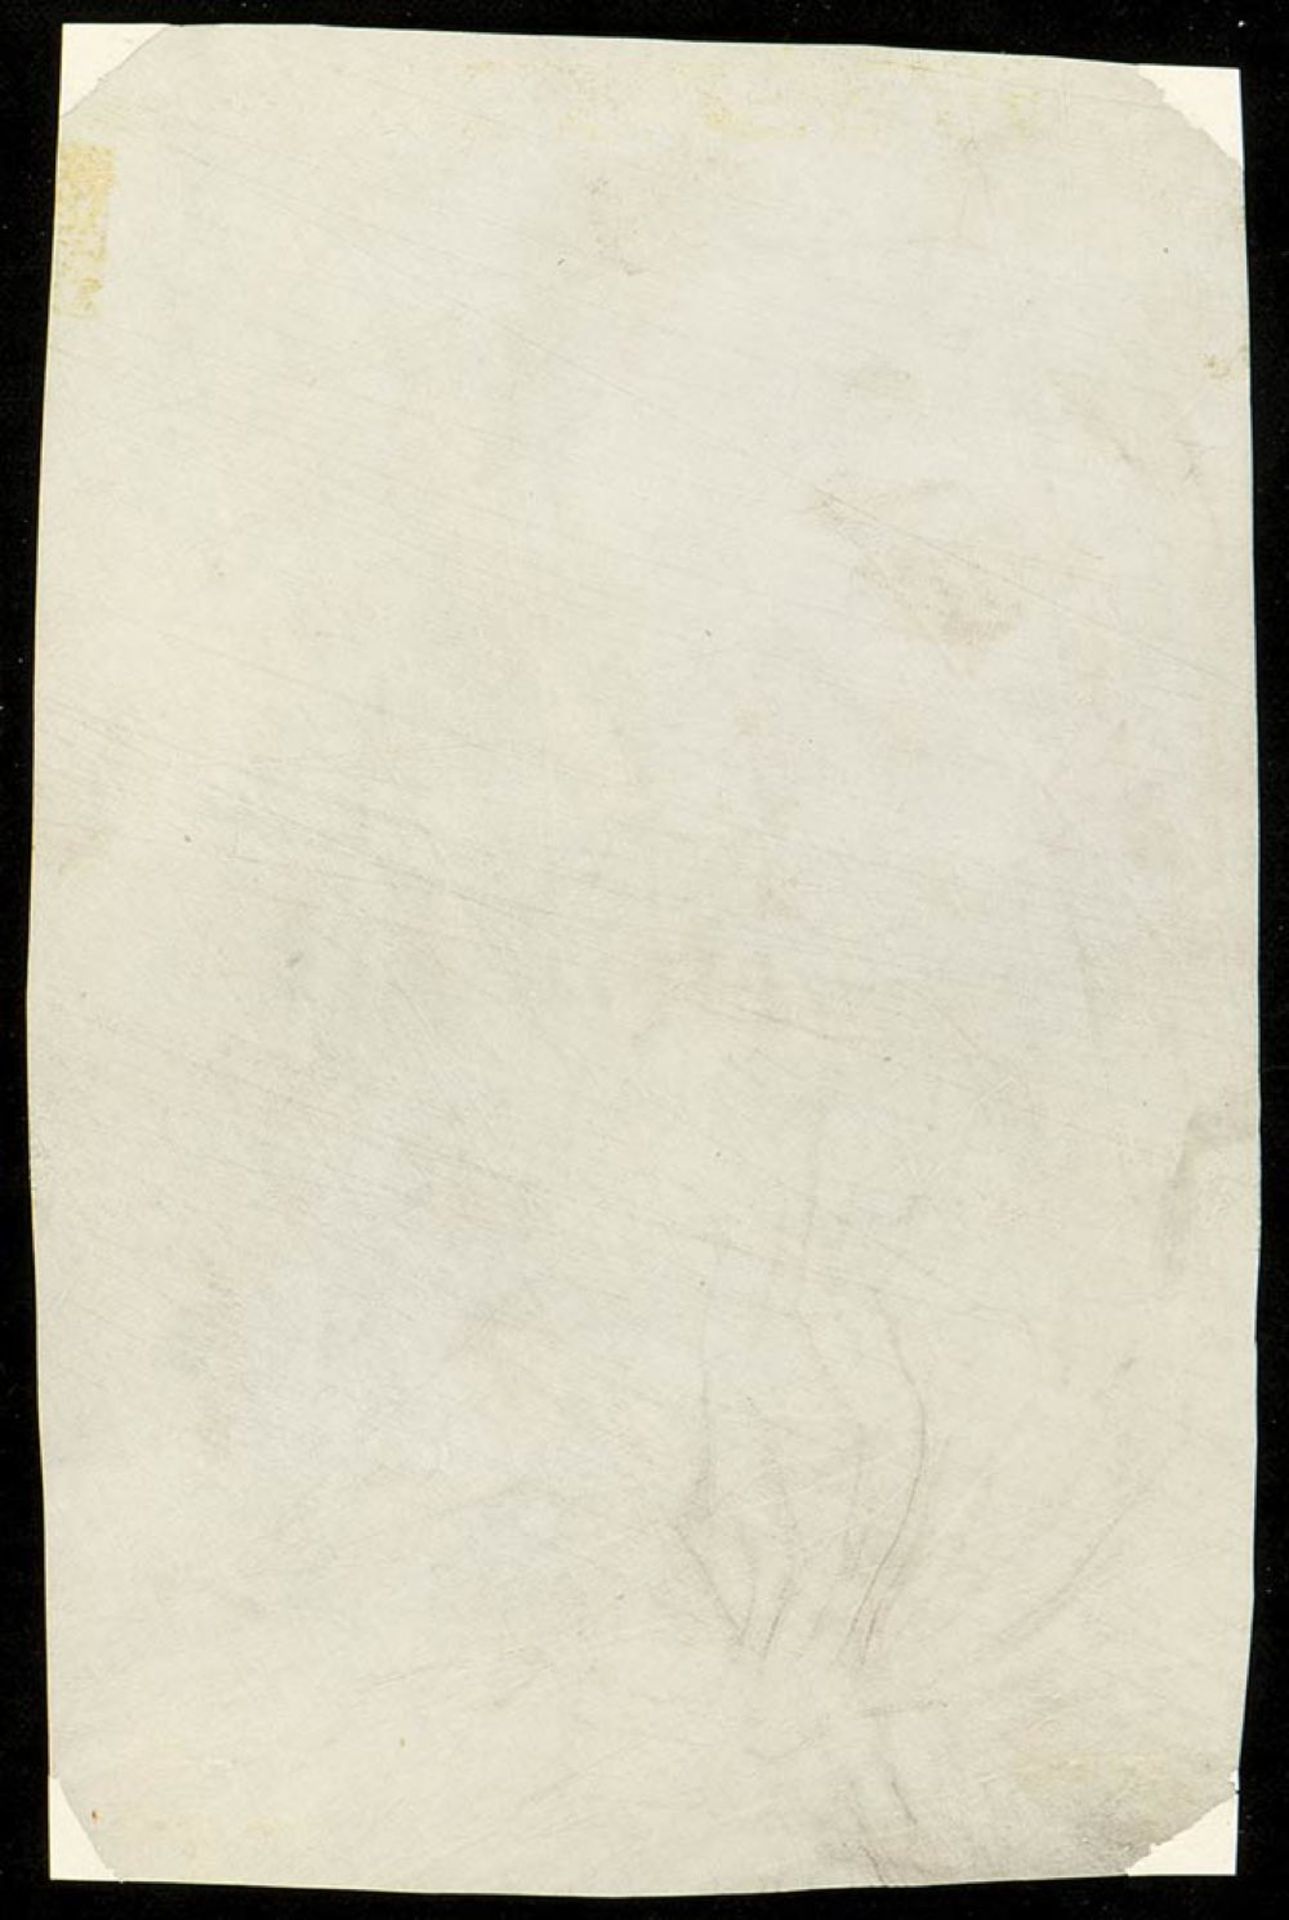 FRANCESCO BARTOLOZZI (Florence, 1727 - Lisbon, 1815), ATTRIBUTED TO - Image 2 of 2